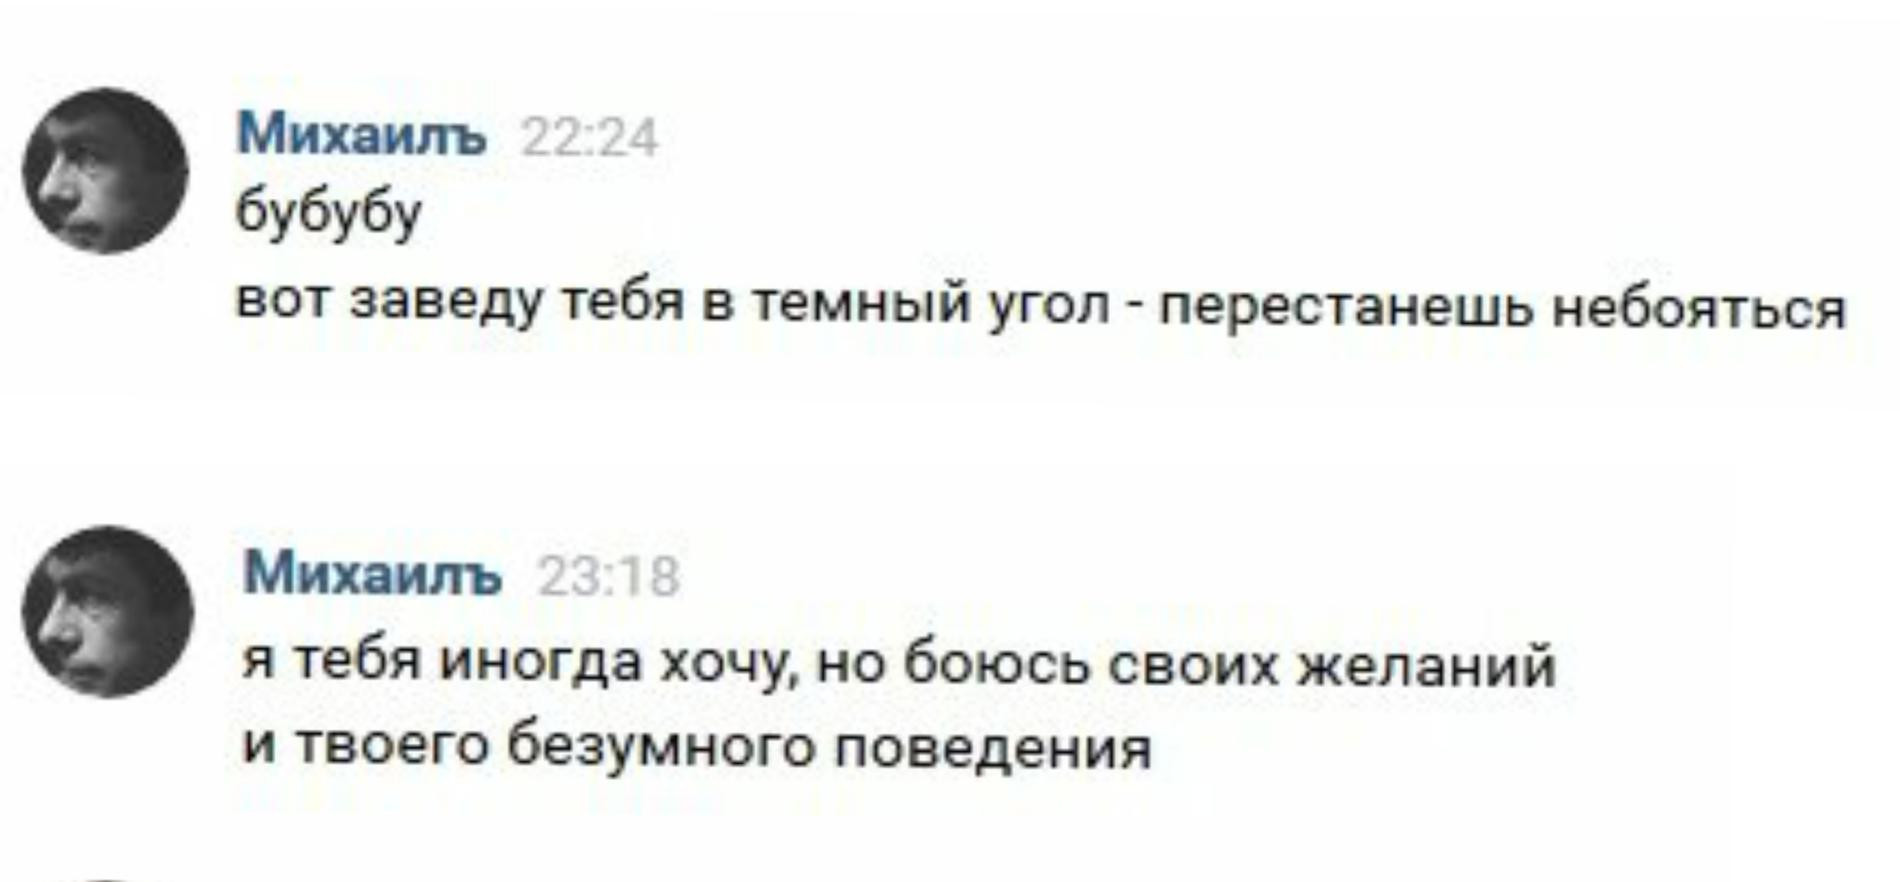 Переписки девушек с Михаилом Скипским, скриншоты из «ВКонтакте»